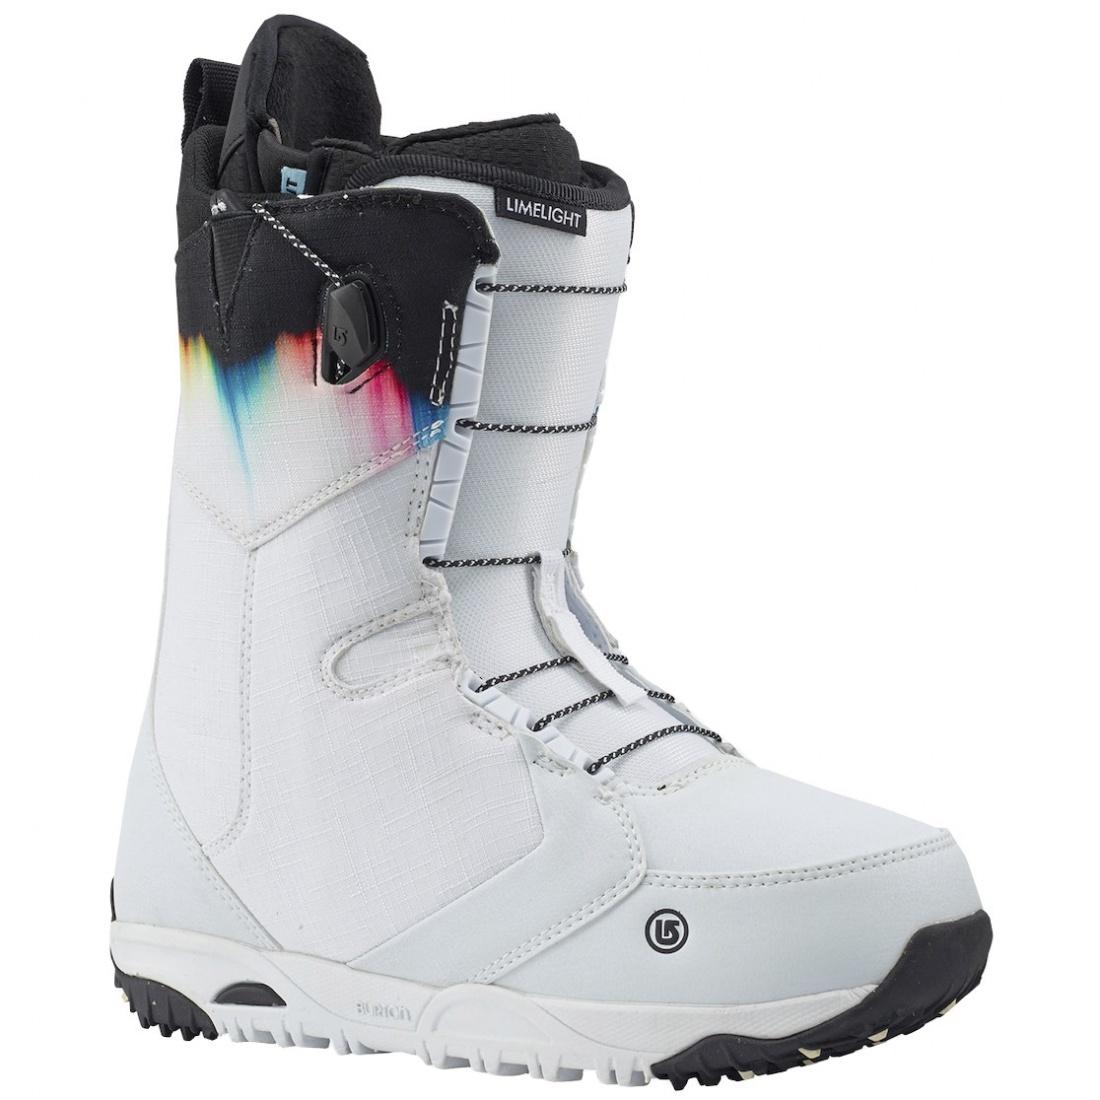 Ботинки сноубордические LIMELIGHT женские Burton, цвет белый, размер 6.5 - фото 1